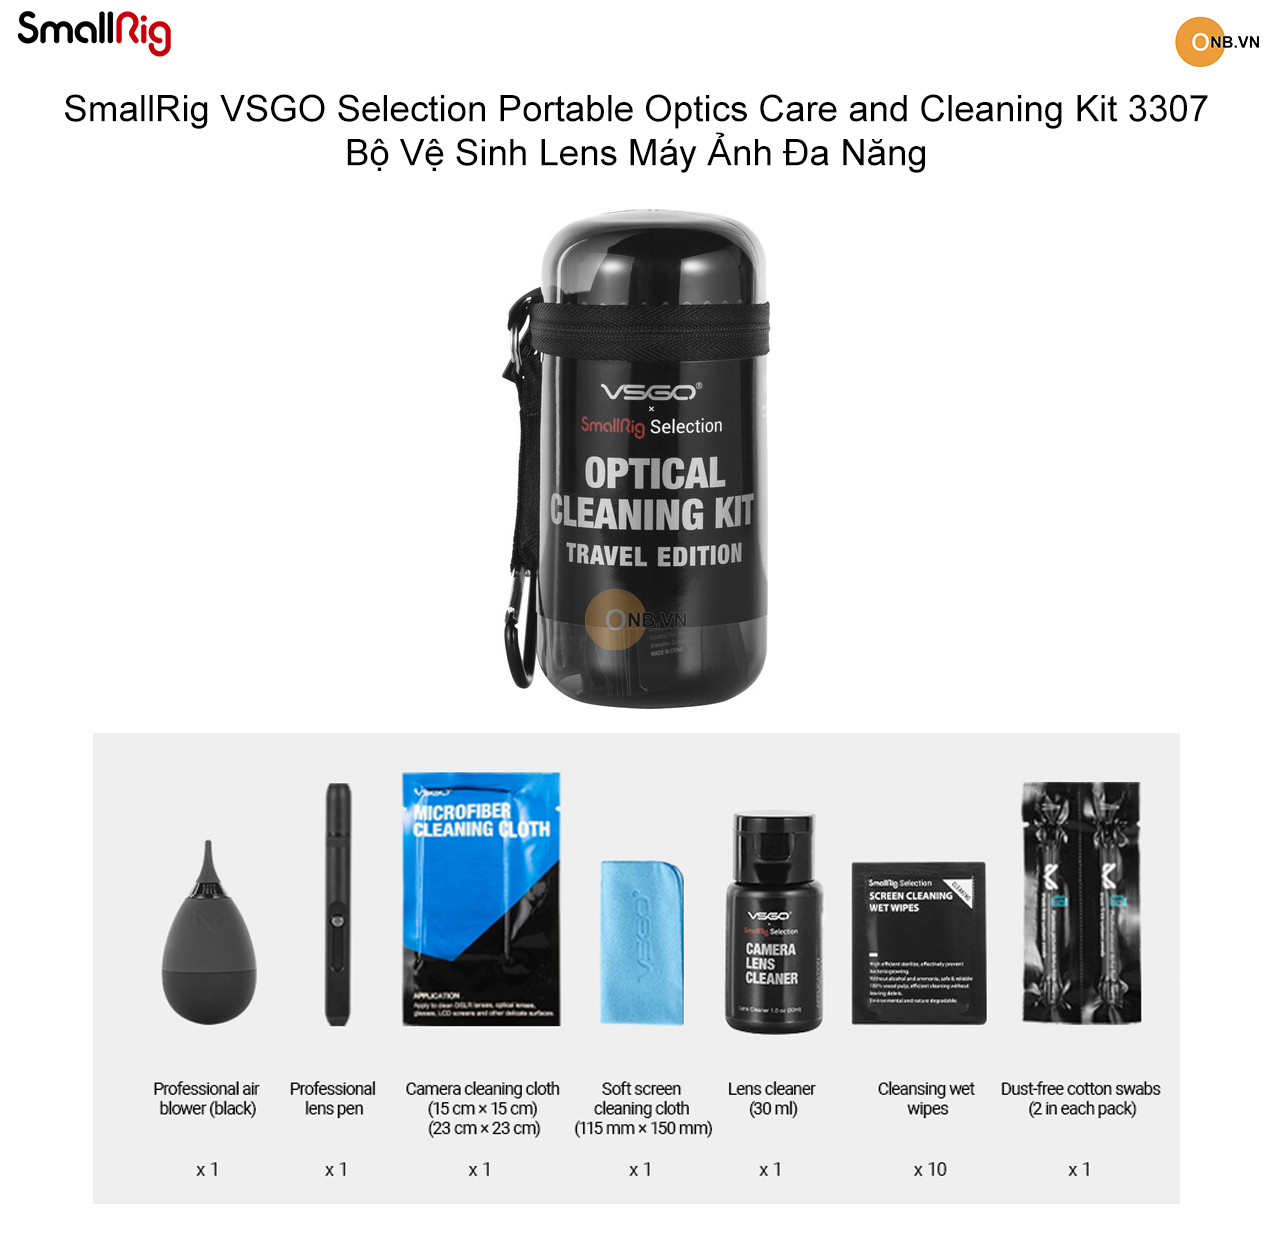 SmallRig VSGO Cleaning Kit 3307 - Bộ Vệ Sinh Ốnh Kính Máy Ảnh Đa Năng